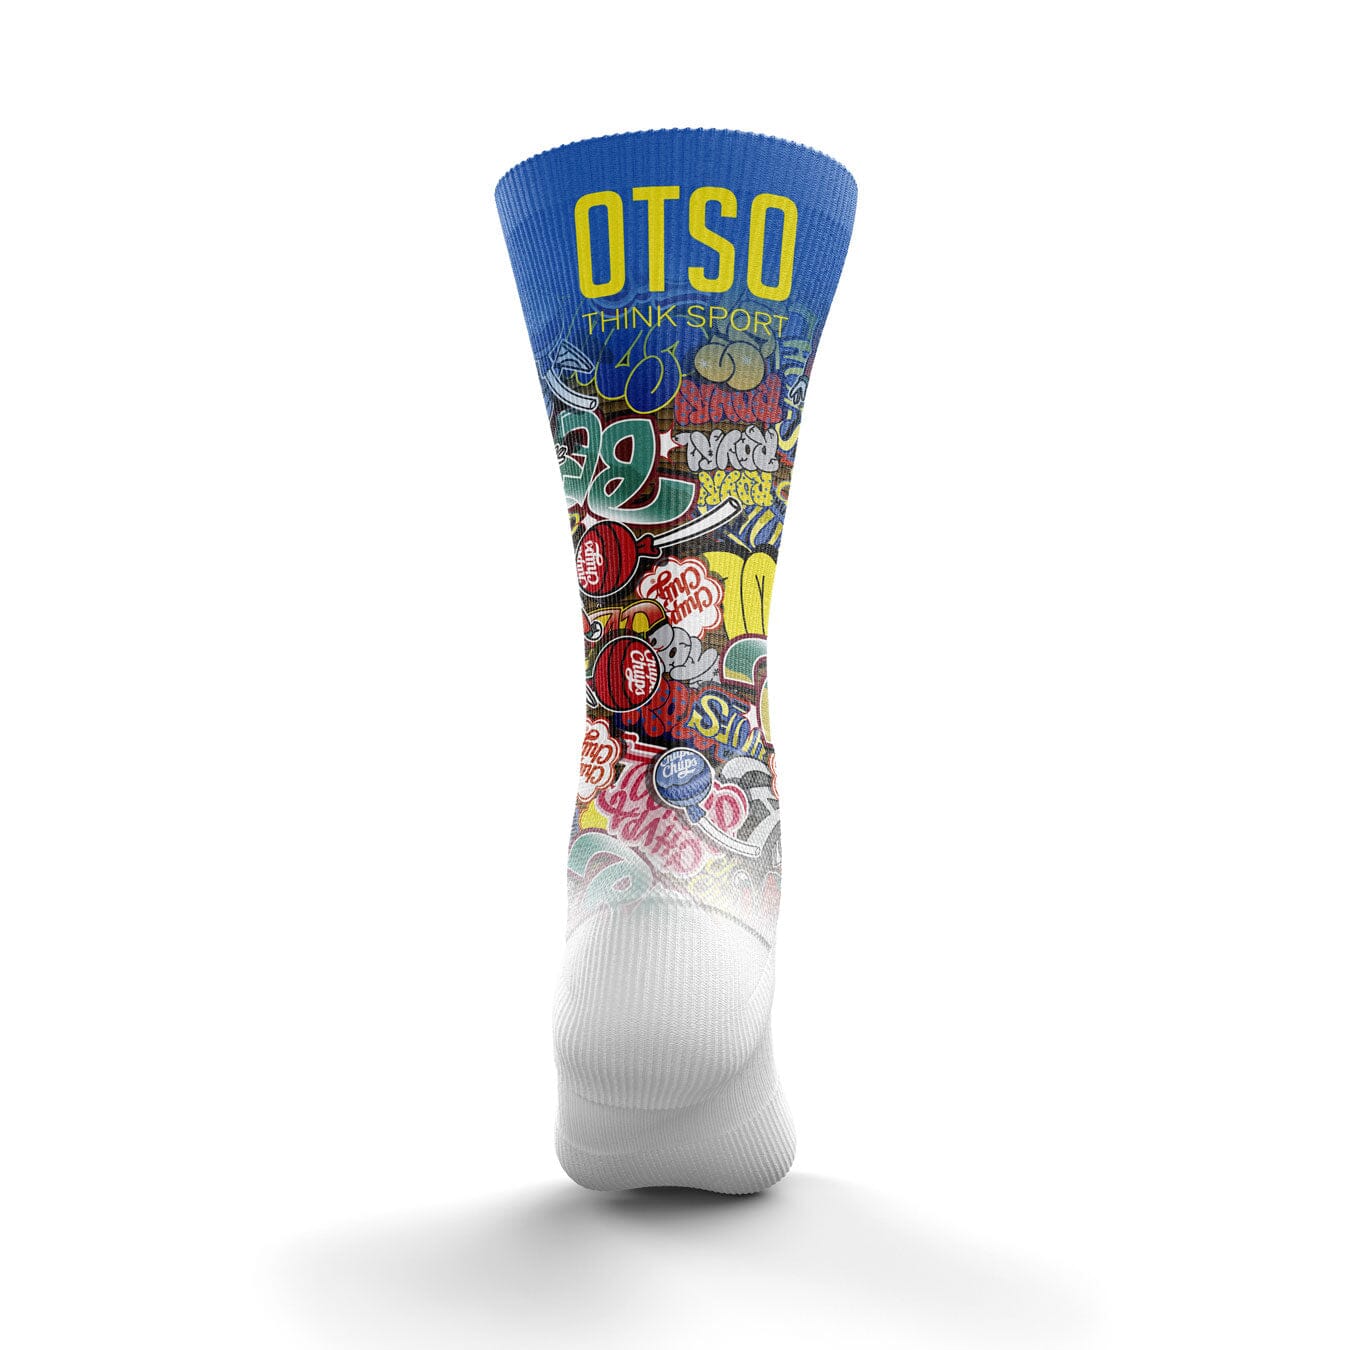 OTSO Multisport Socks High Cut Chupa Chups Graffiti M 